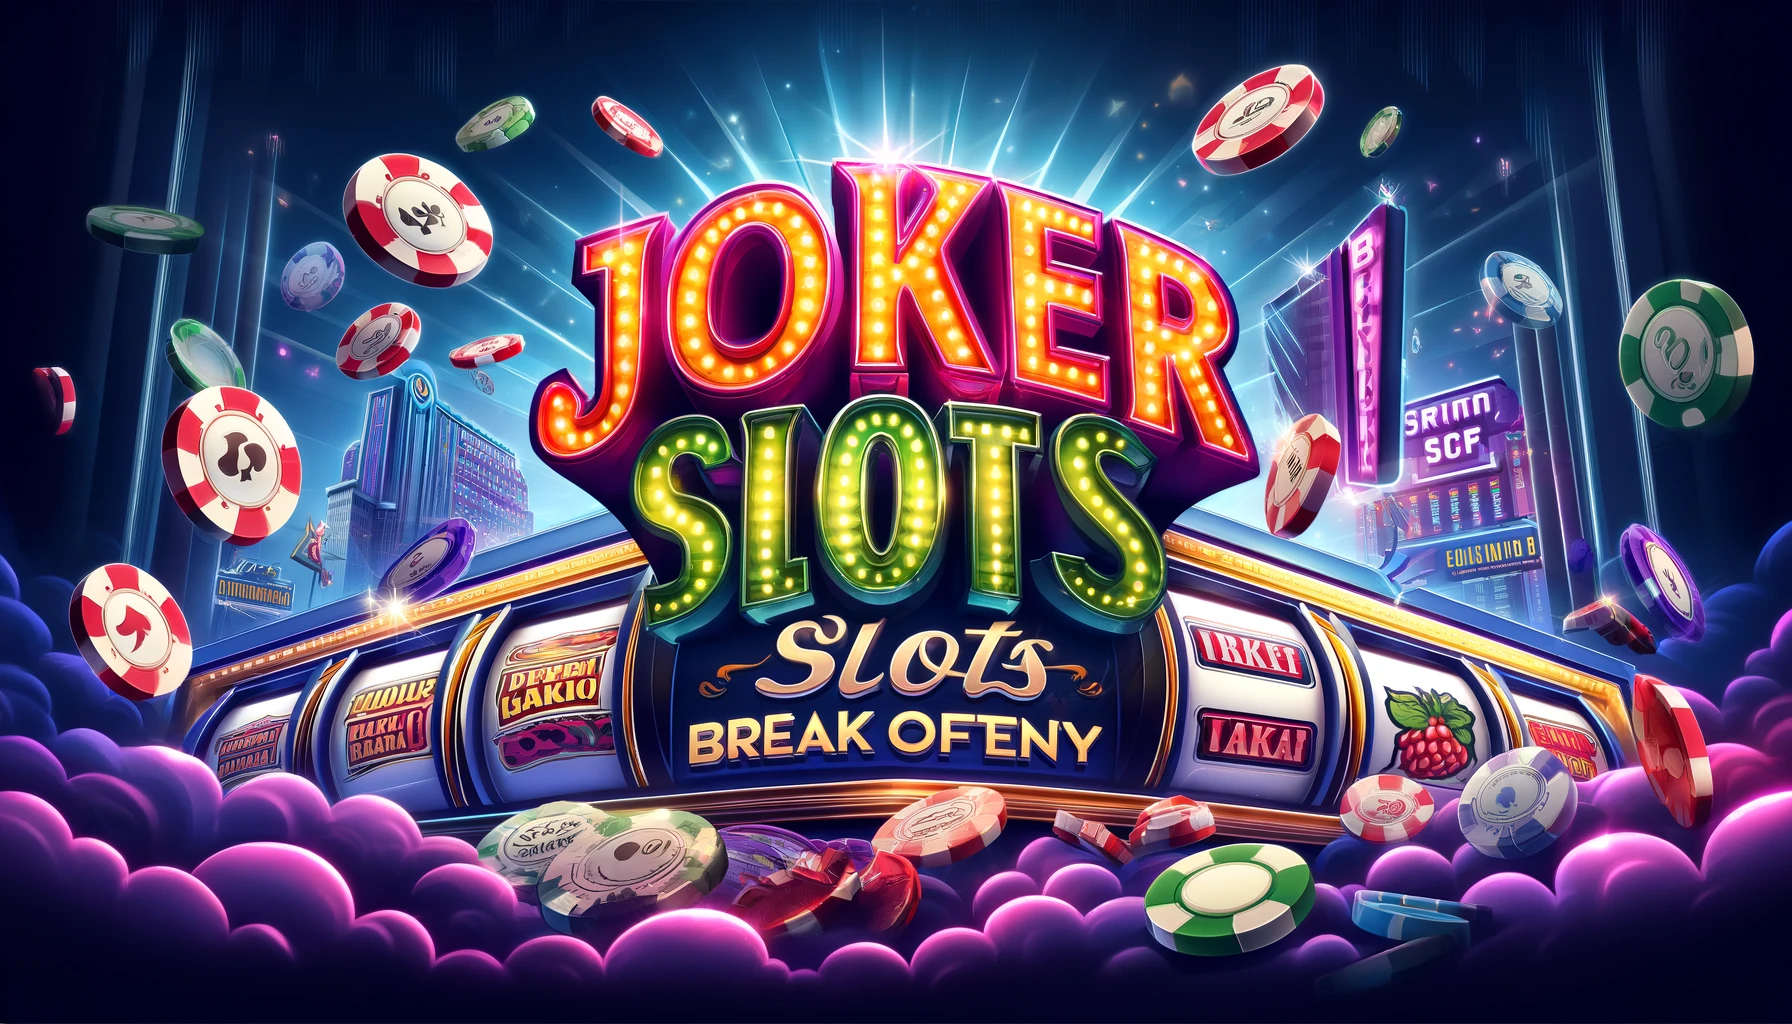 Joker slots break often